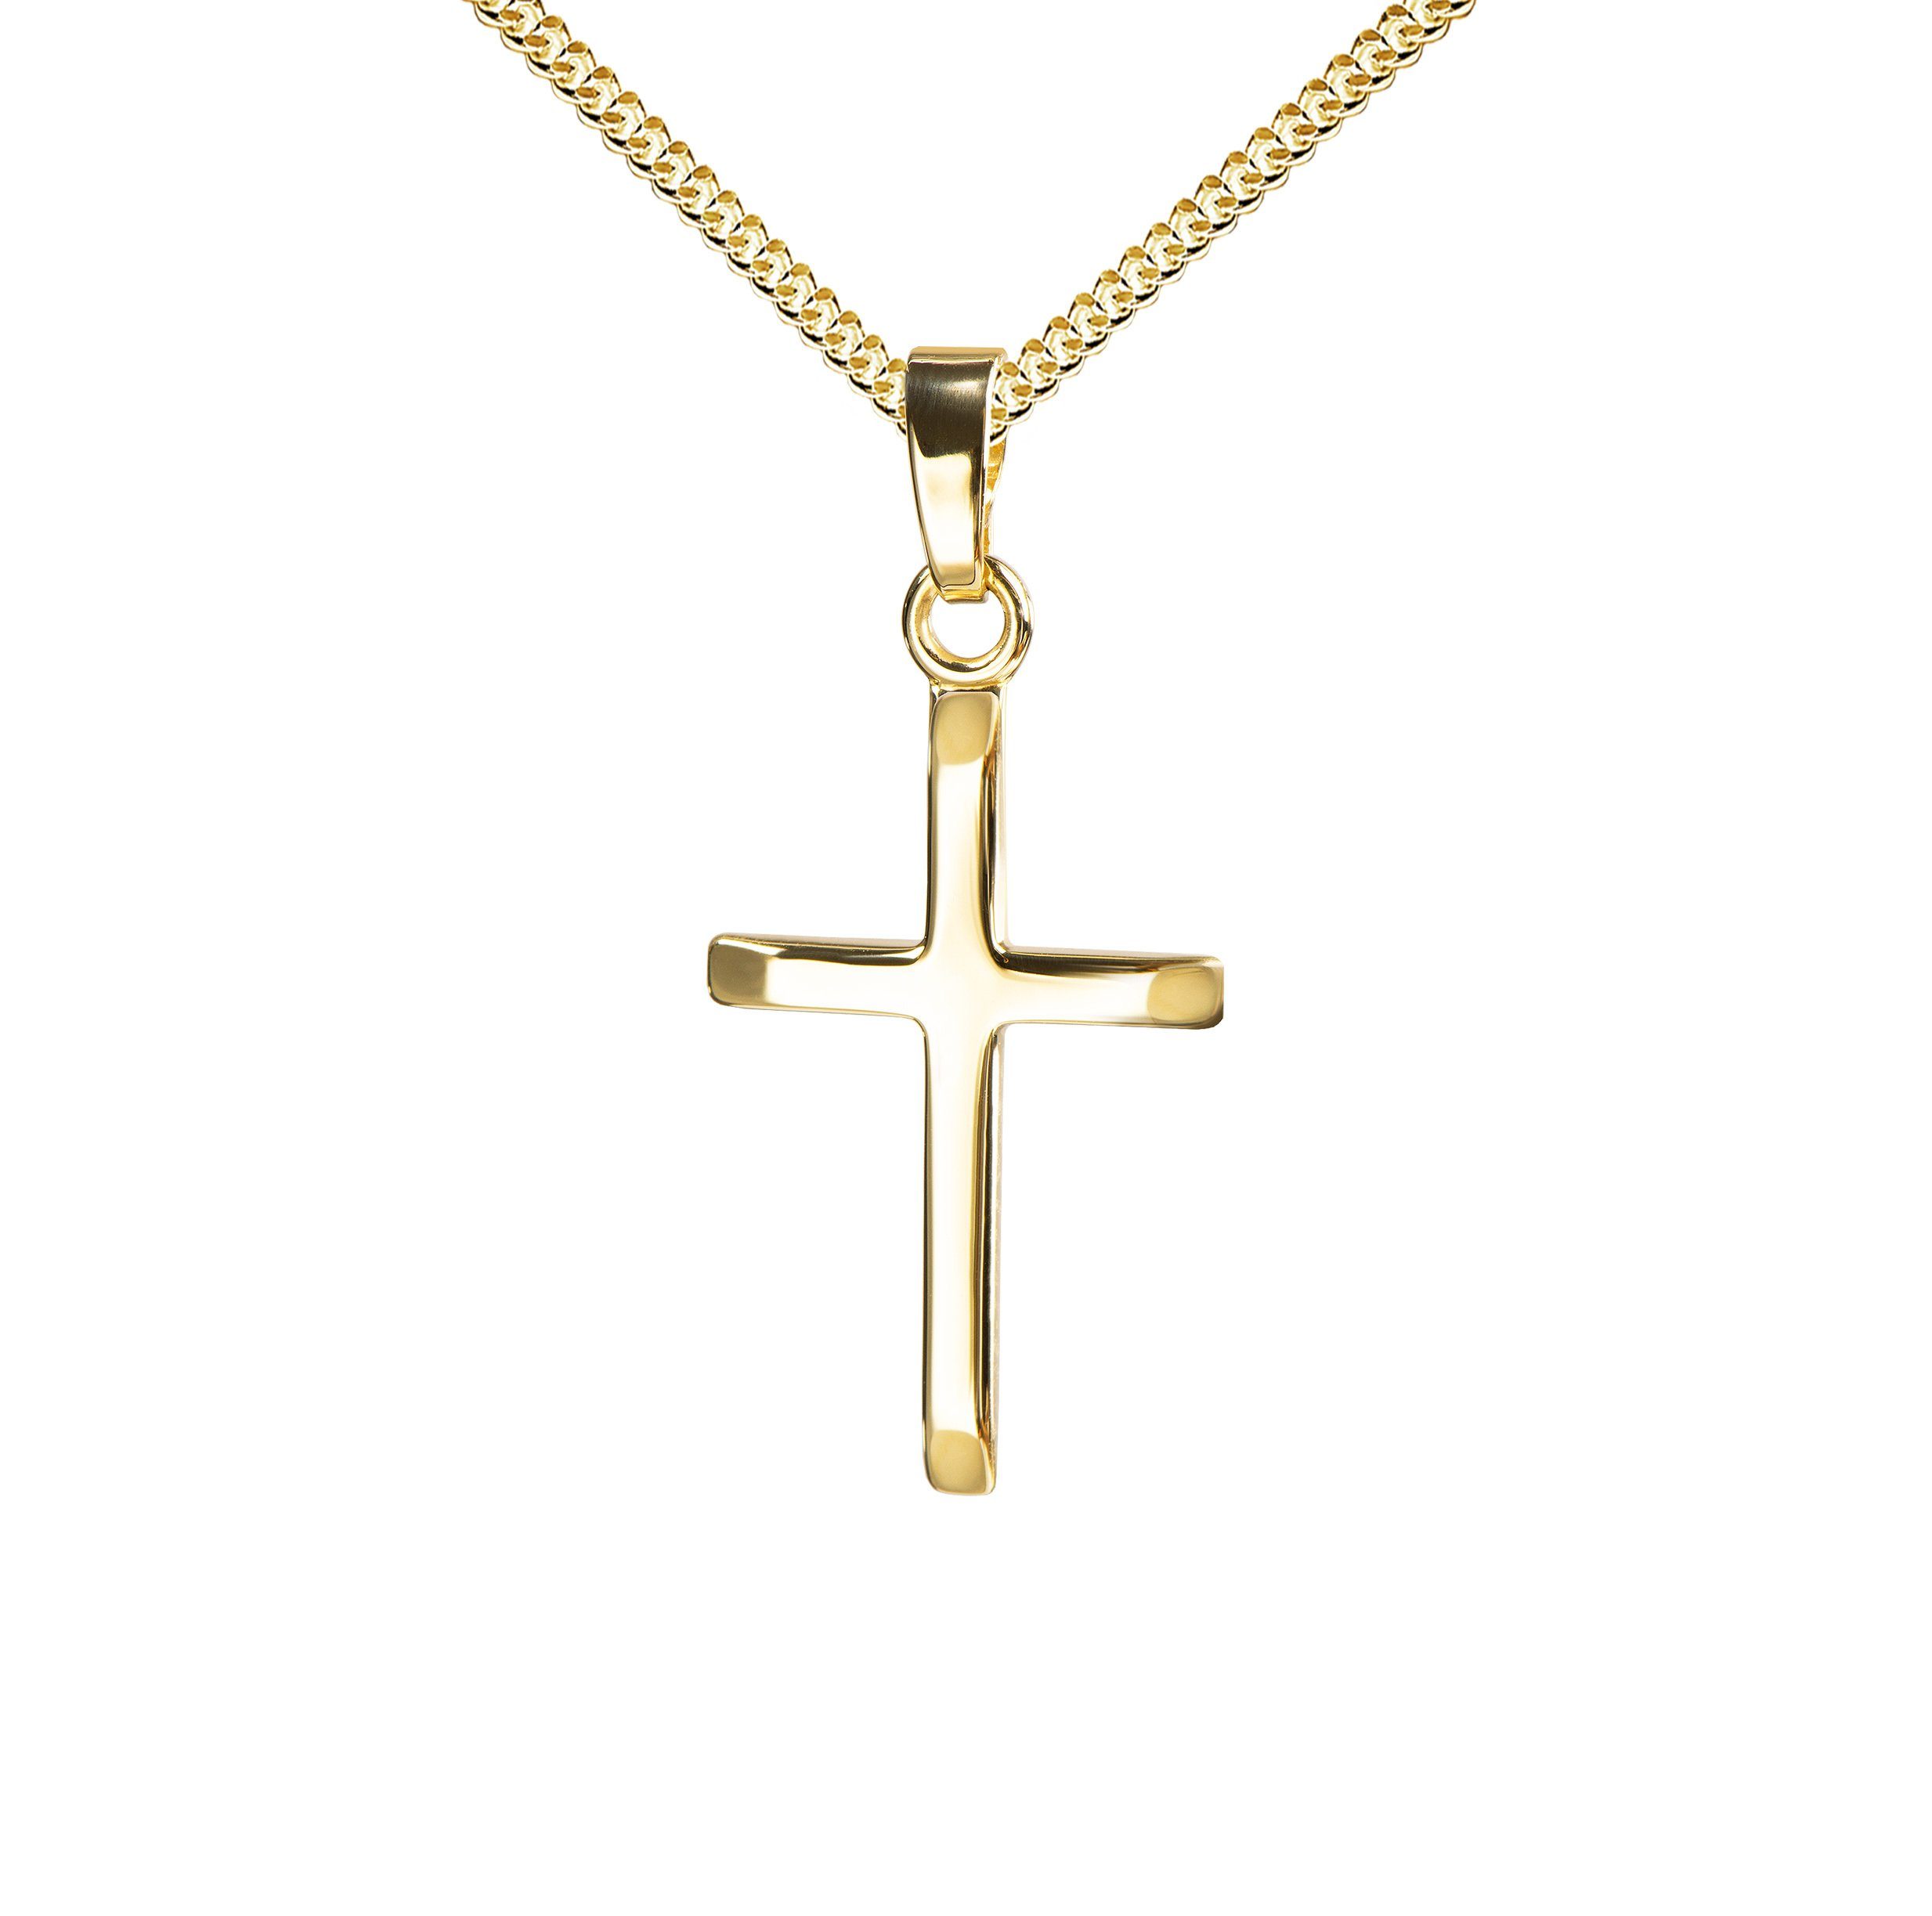 JEVELION Kreuzkette Kreuzanhänger 750 Goldkreuz - Made in Germany (Goldanhänger, für Damen und Herren), Mit Kette vergoldet- Länge wählbar 36 - 70 cm oder ohne Kette.